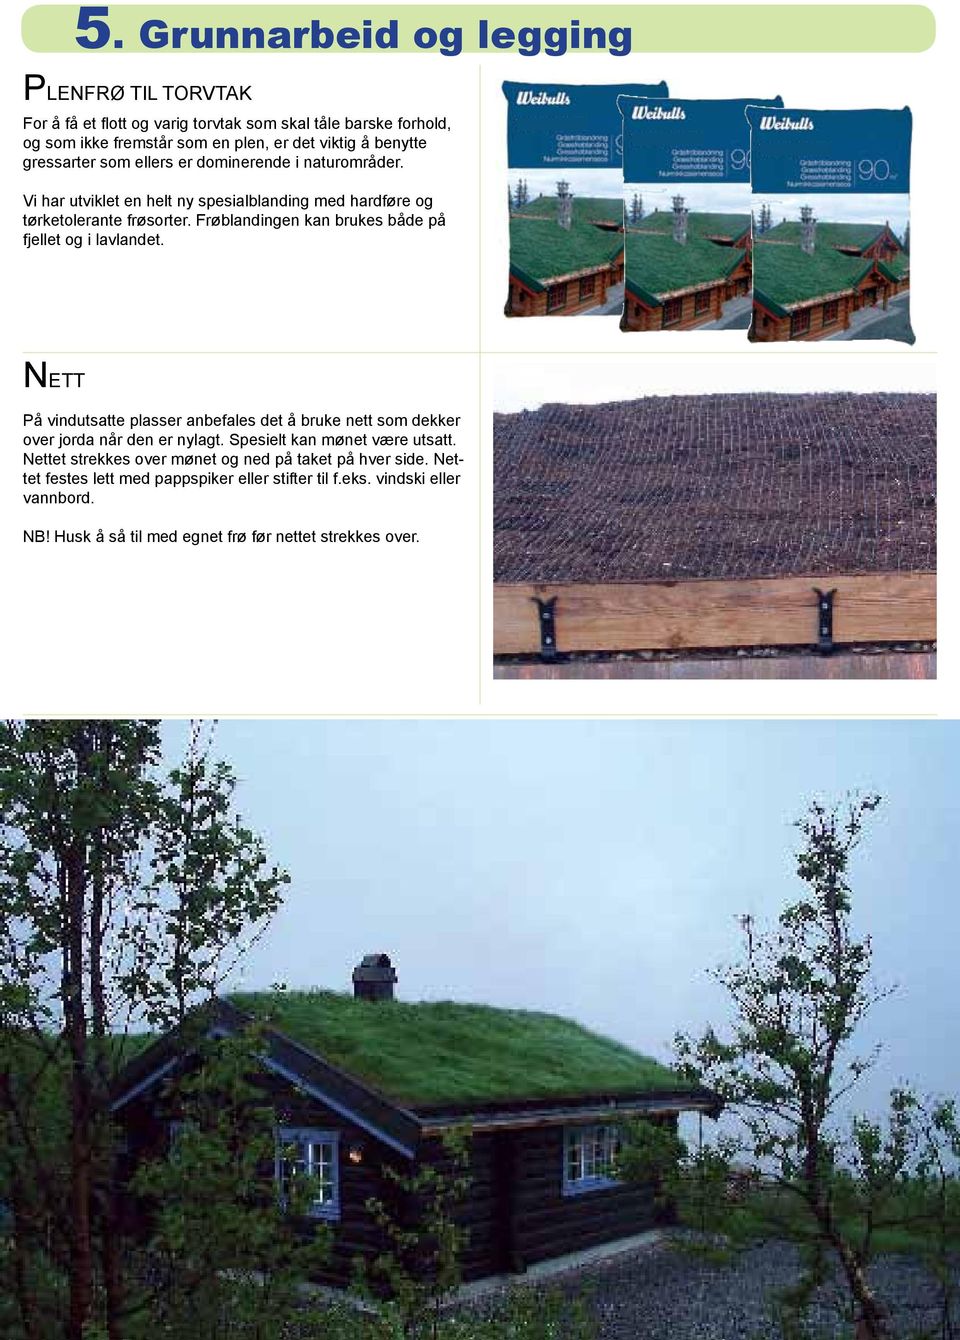 Frøblandingen kan brukes både på fjellet og i lavlandet. NETT På vindutsatte plasser anbefales det å bruke nett som dekker over jorda når den er nylagt.